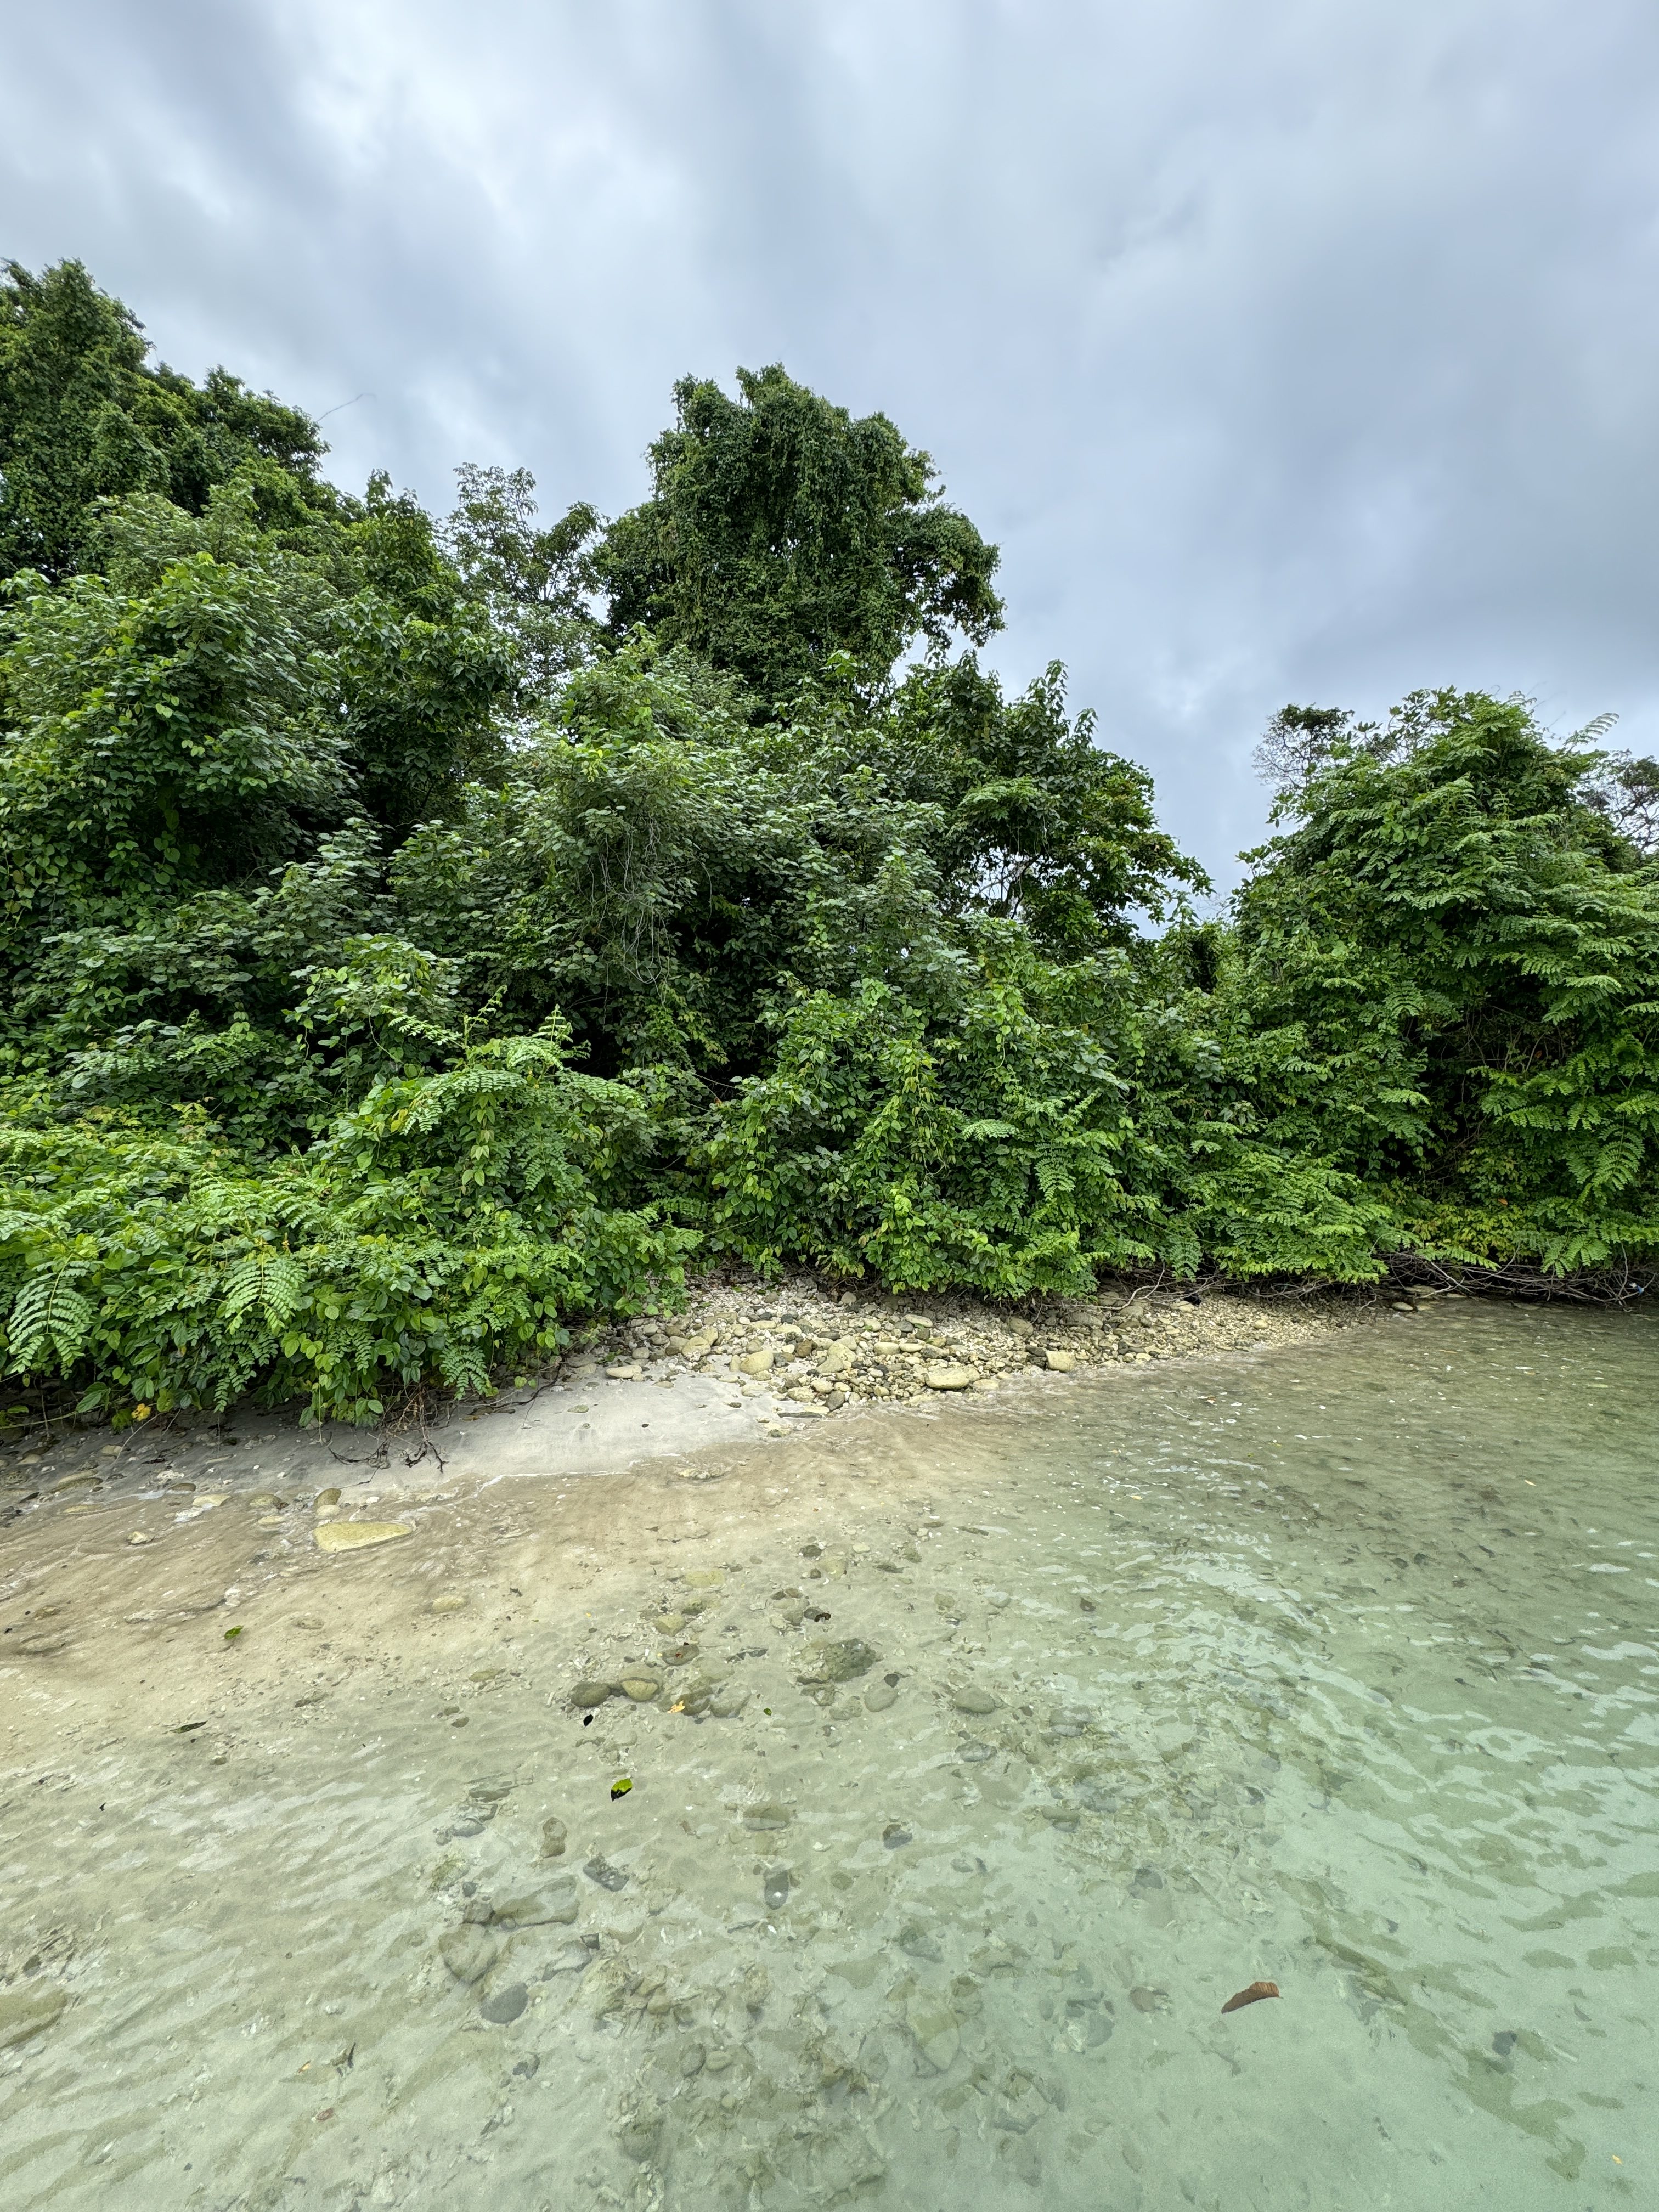 Ağaçlar, kum ve su ile çekilmiş doğa iPhone 15 Pro Fotoğraf Stili Standardı ile çekilmiştir.